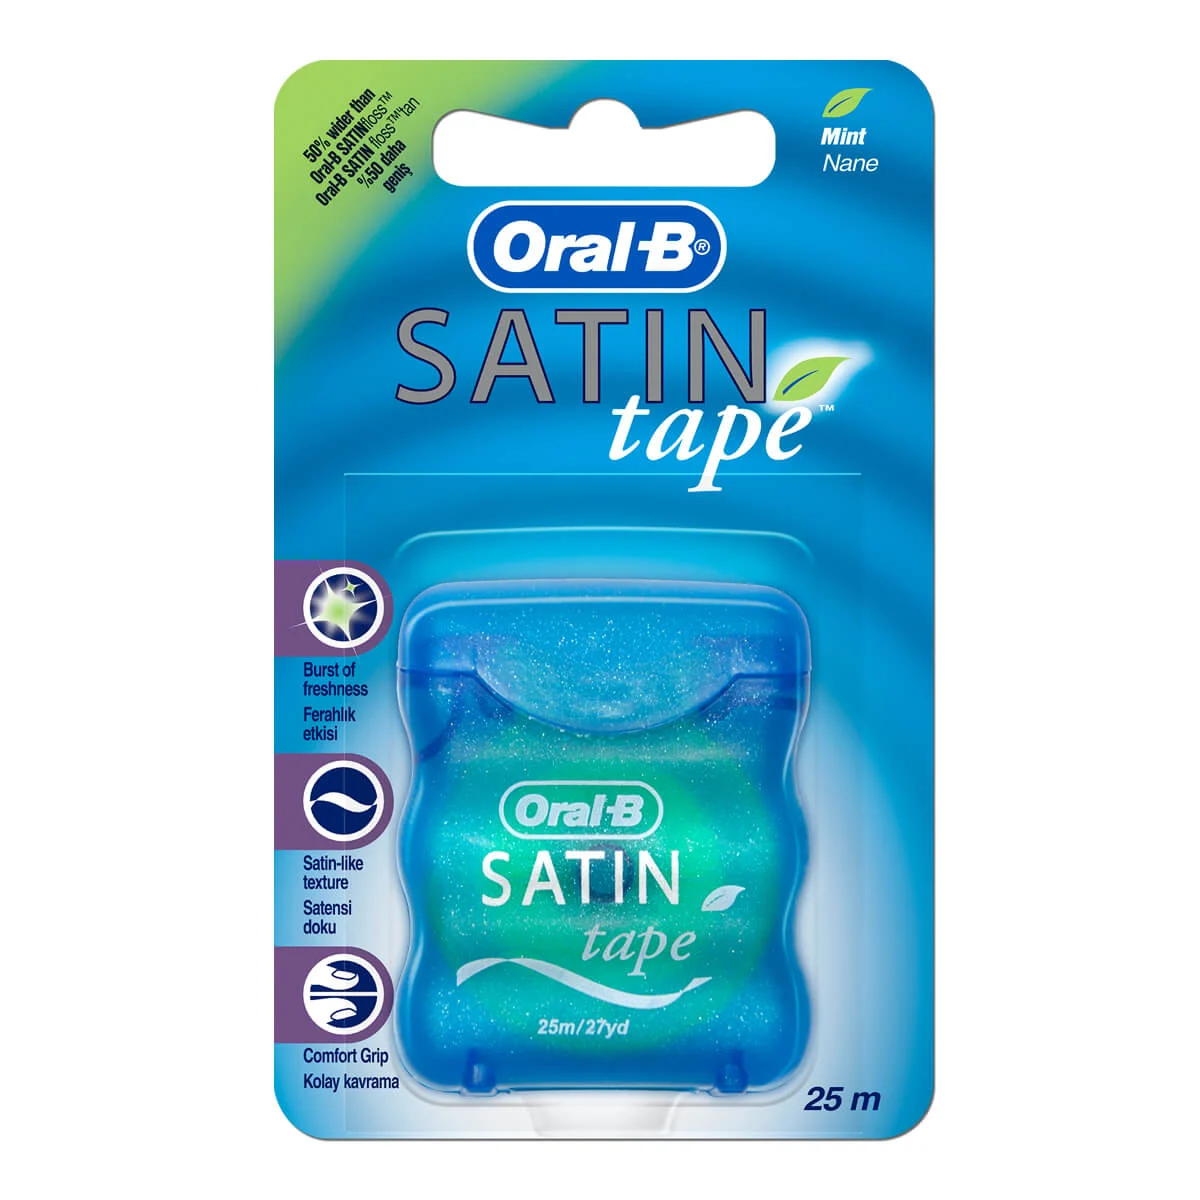 Oral-B Satin Tape Mint 